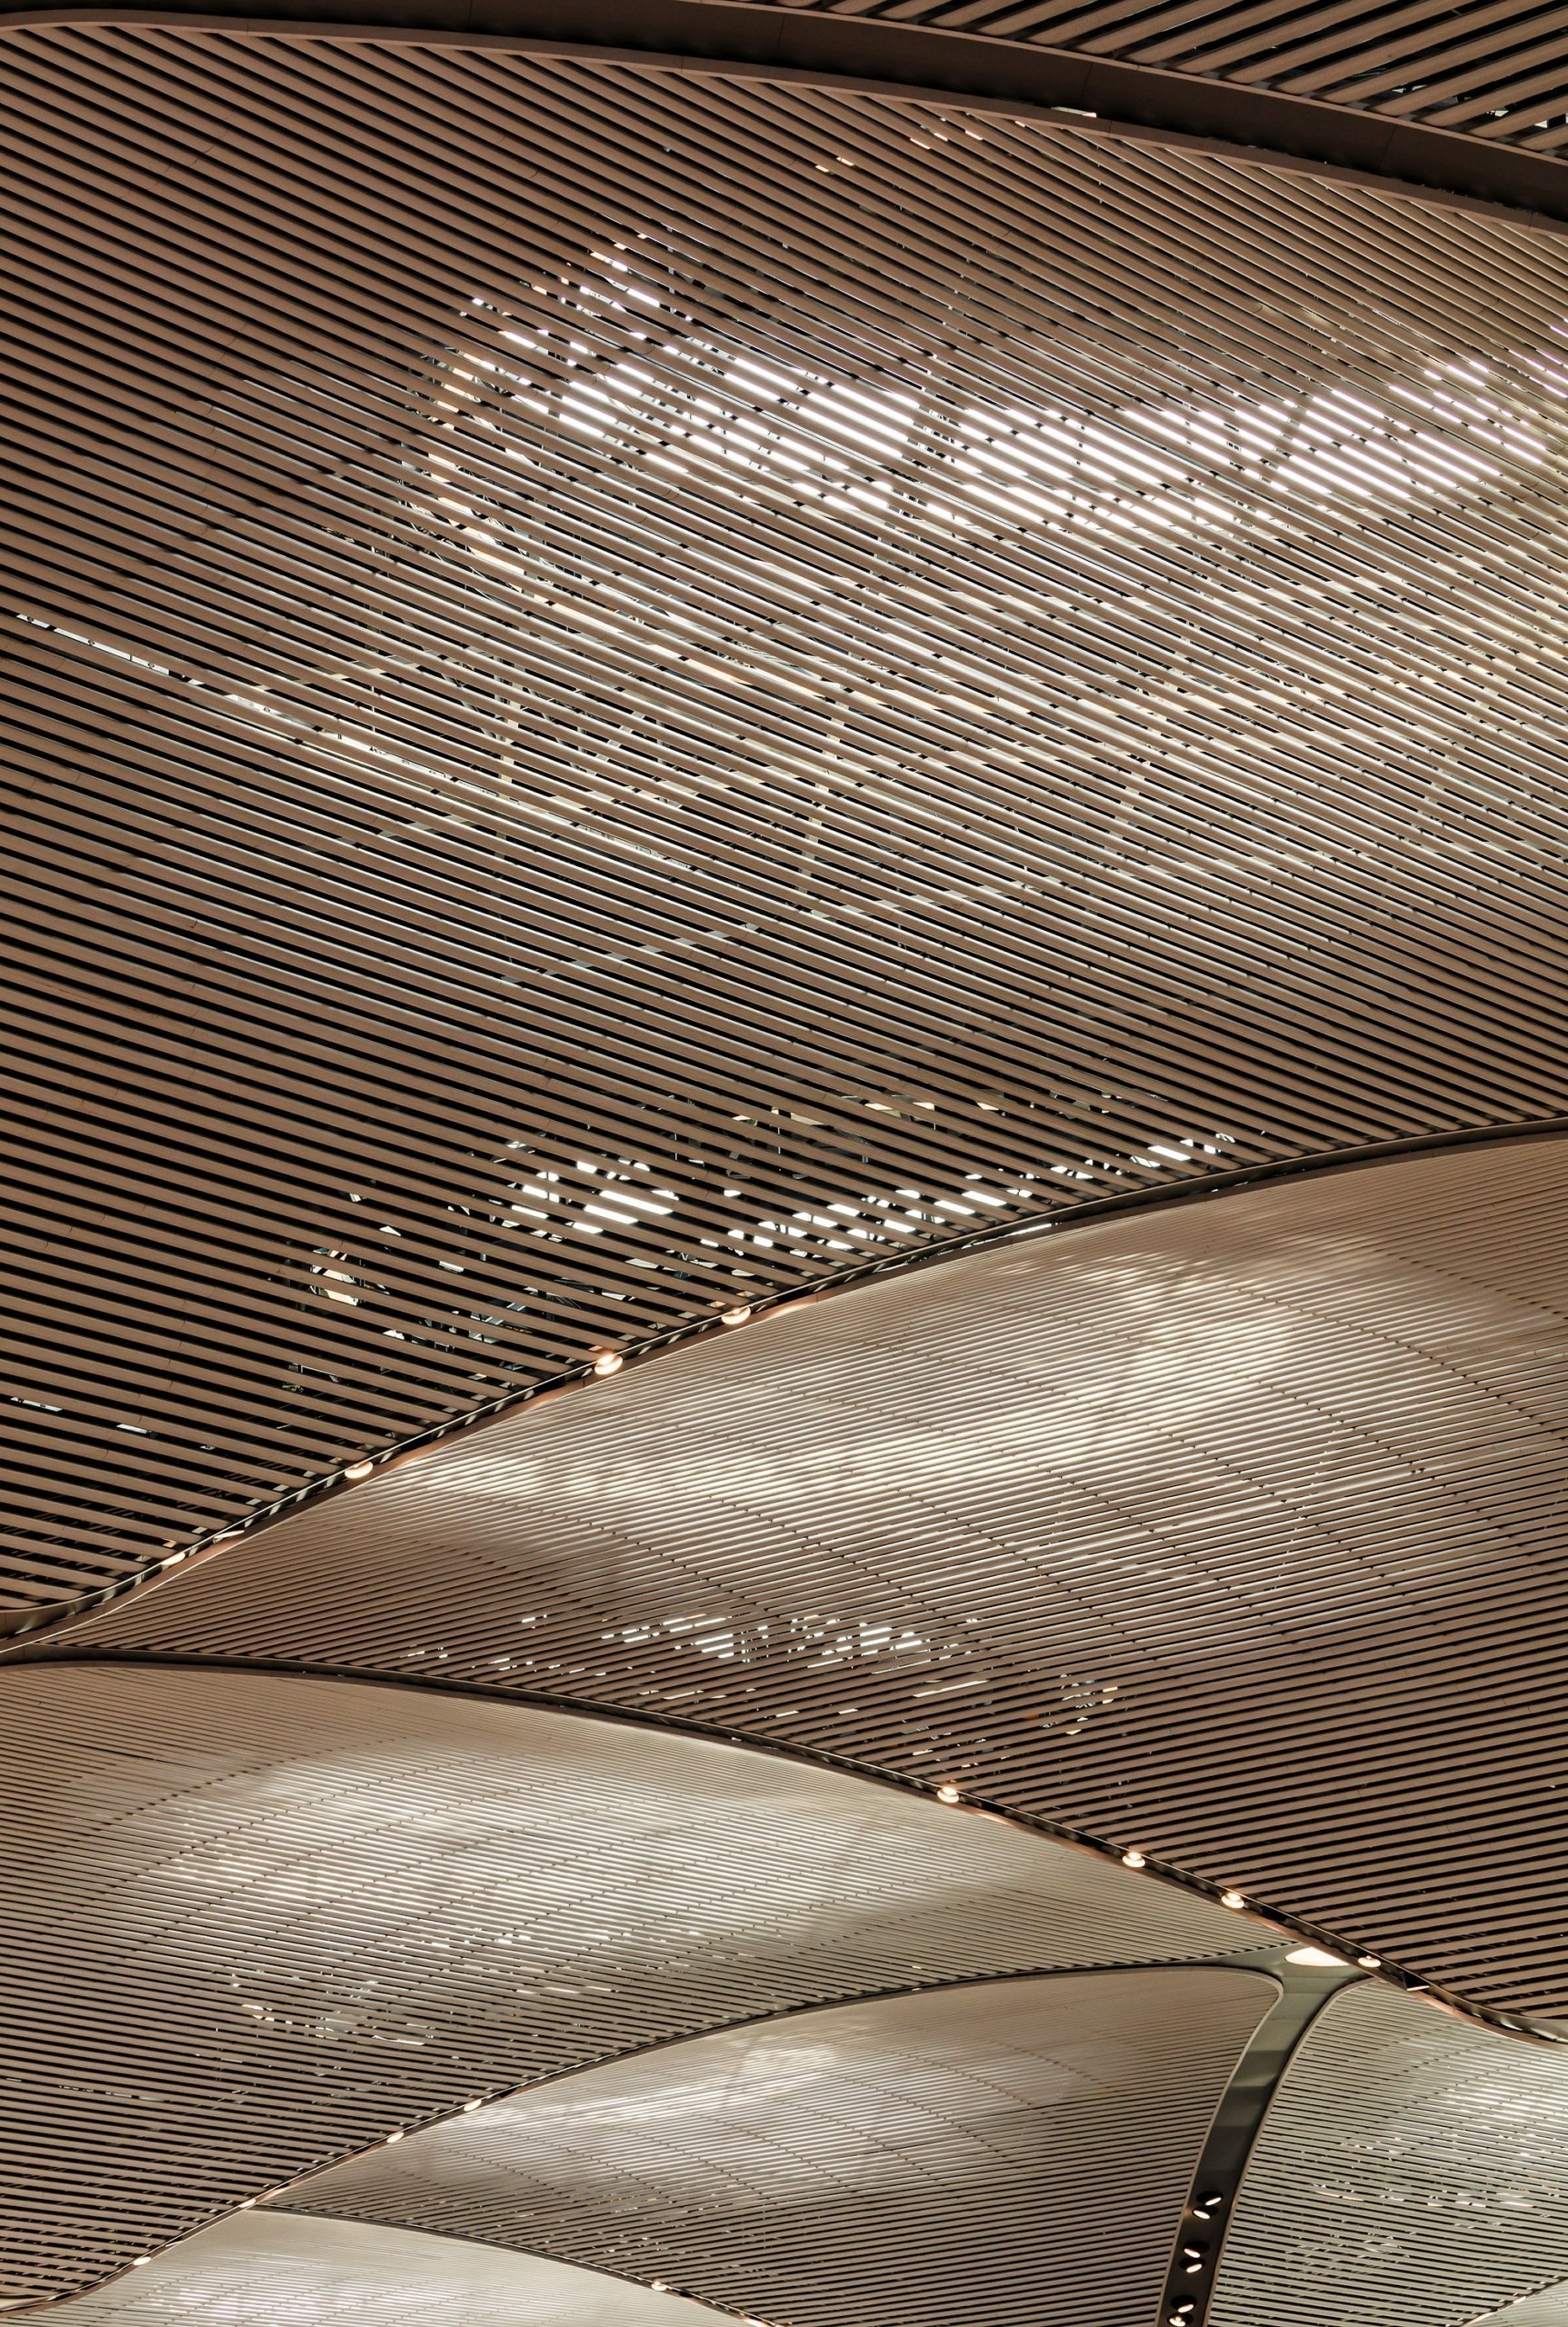 Το νέο αεροδρόμιο της Κωνσταντινούπολης είναι ένας γίγαντας στο σταυροδρόμι των ηπείρων